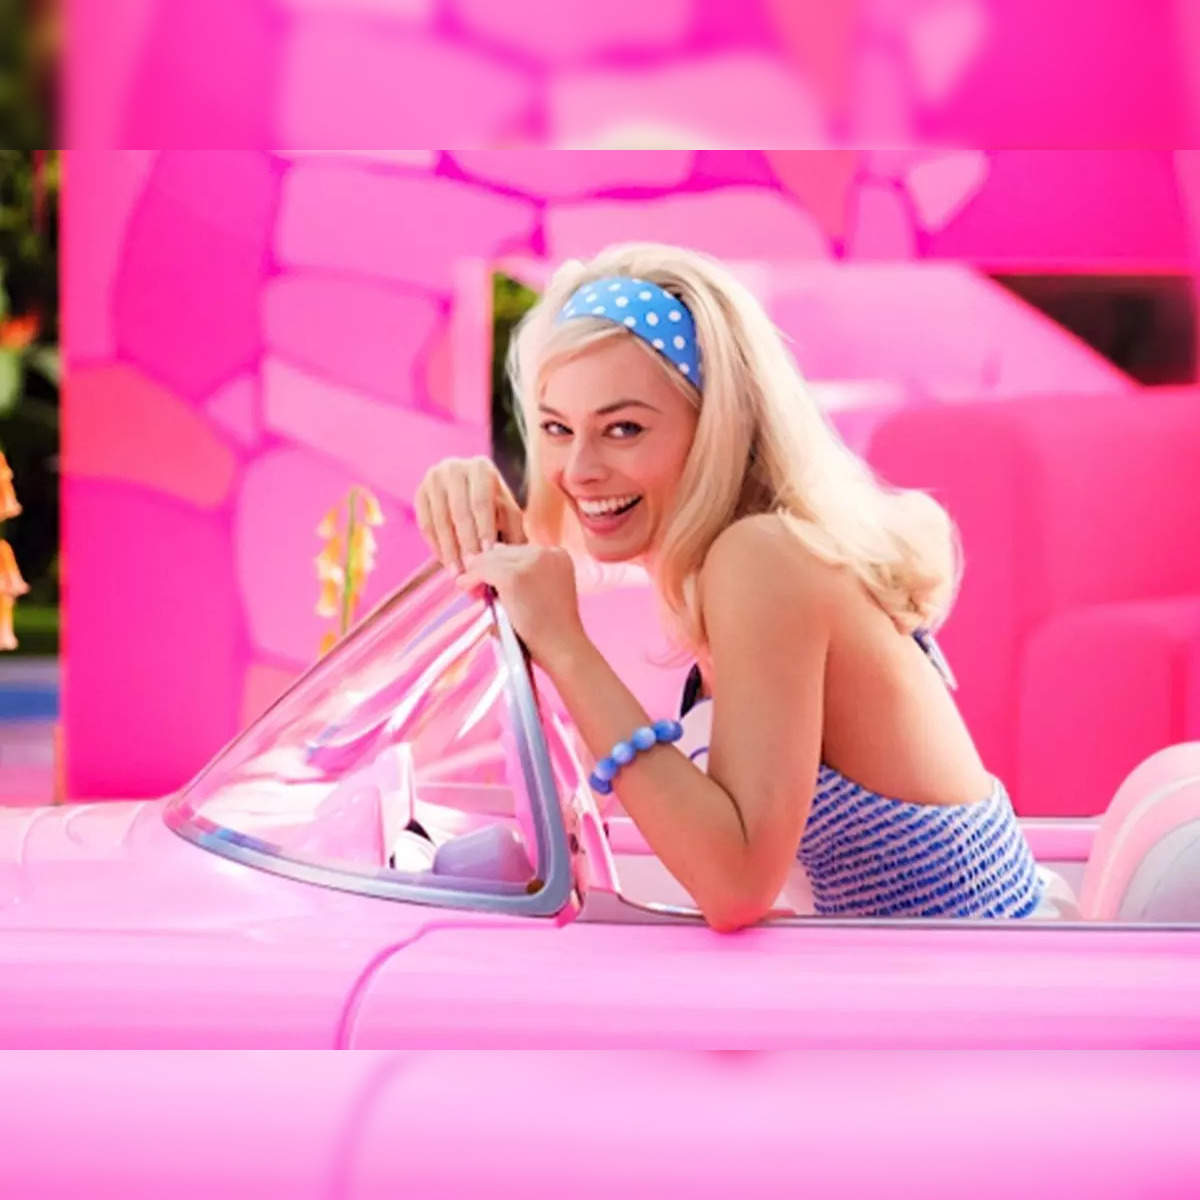 Margot Robbie, Barbie (2023). Photo credit: Jaap Buitendijk/Warner Bros  Stock Photo - Alamy